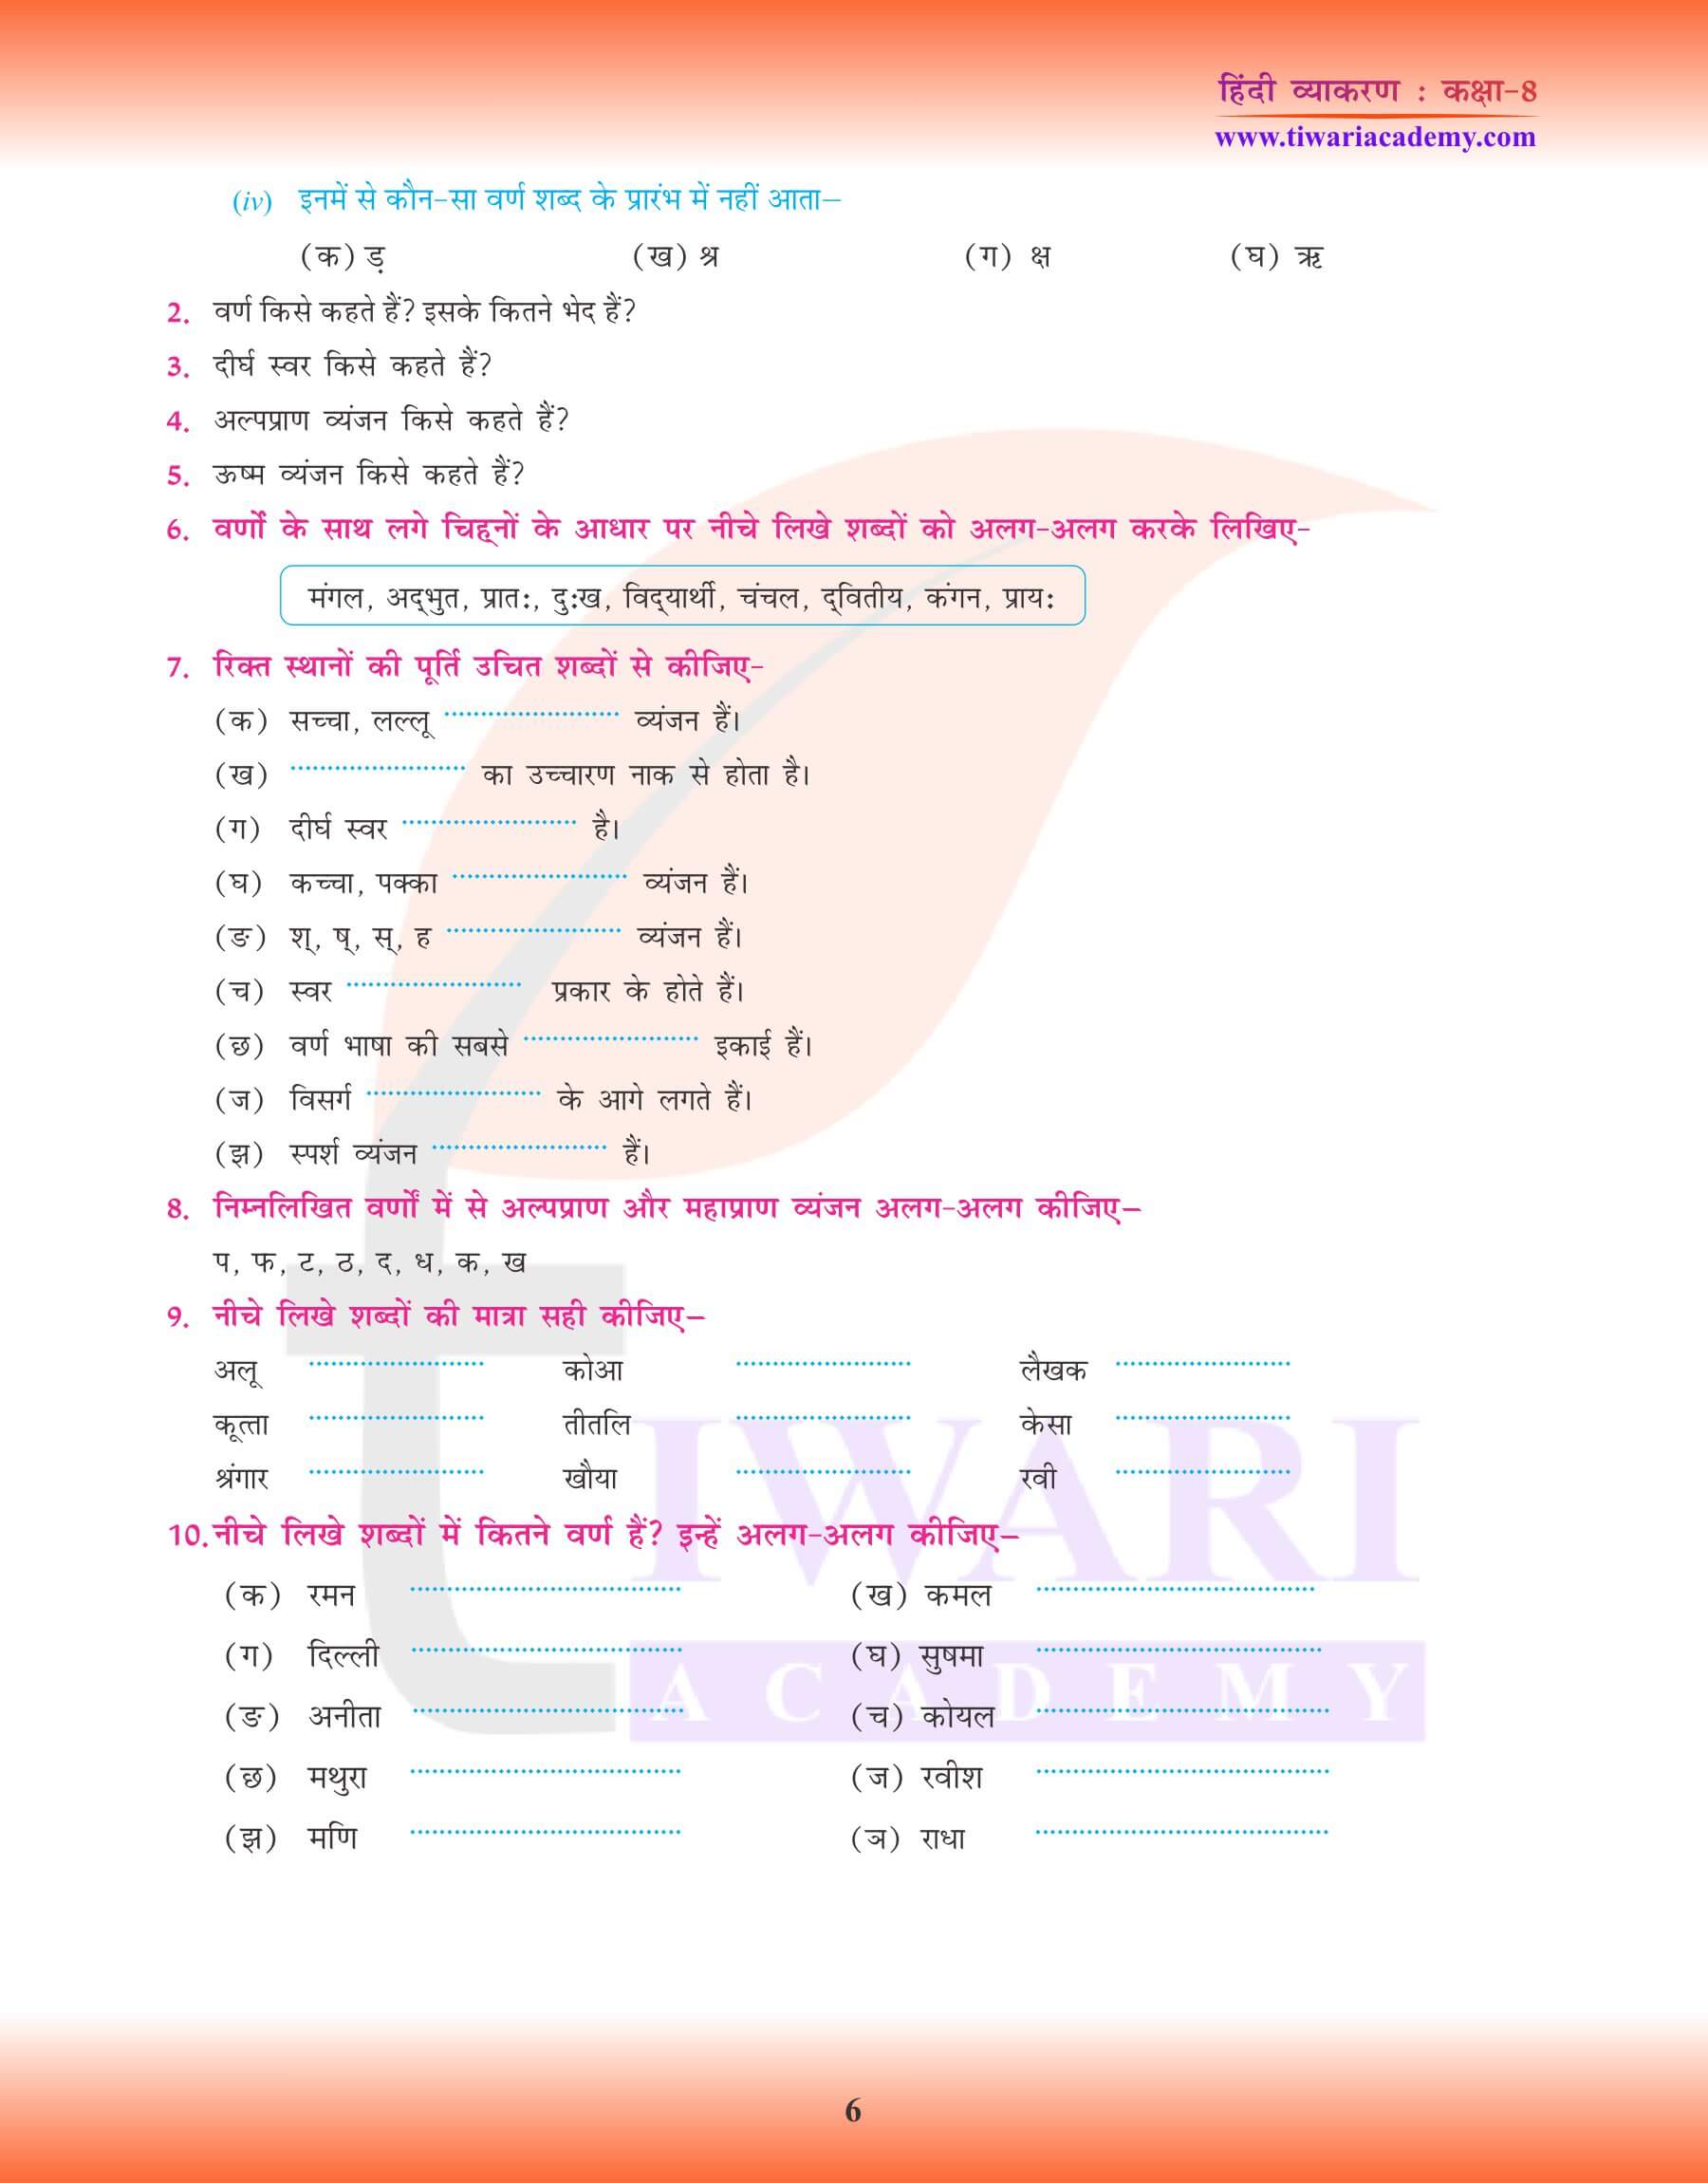 कक्षा 8 हिंदी व्याकरण वर्ण विचार के लिए अभ्यास